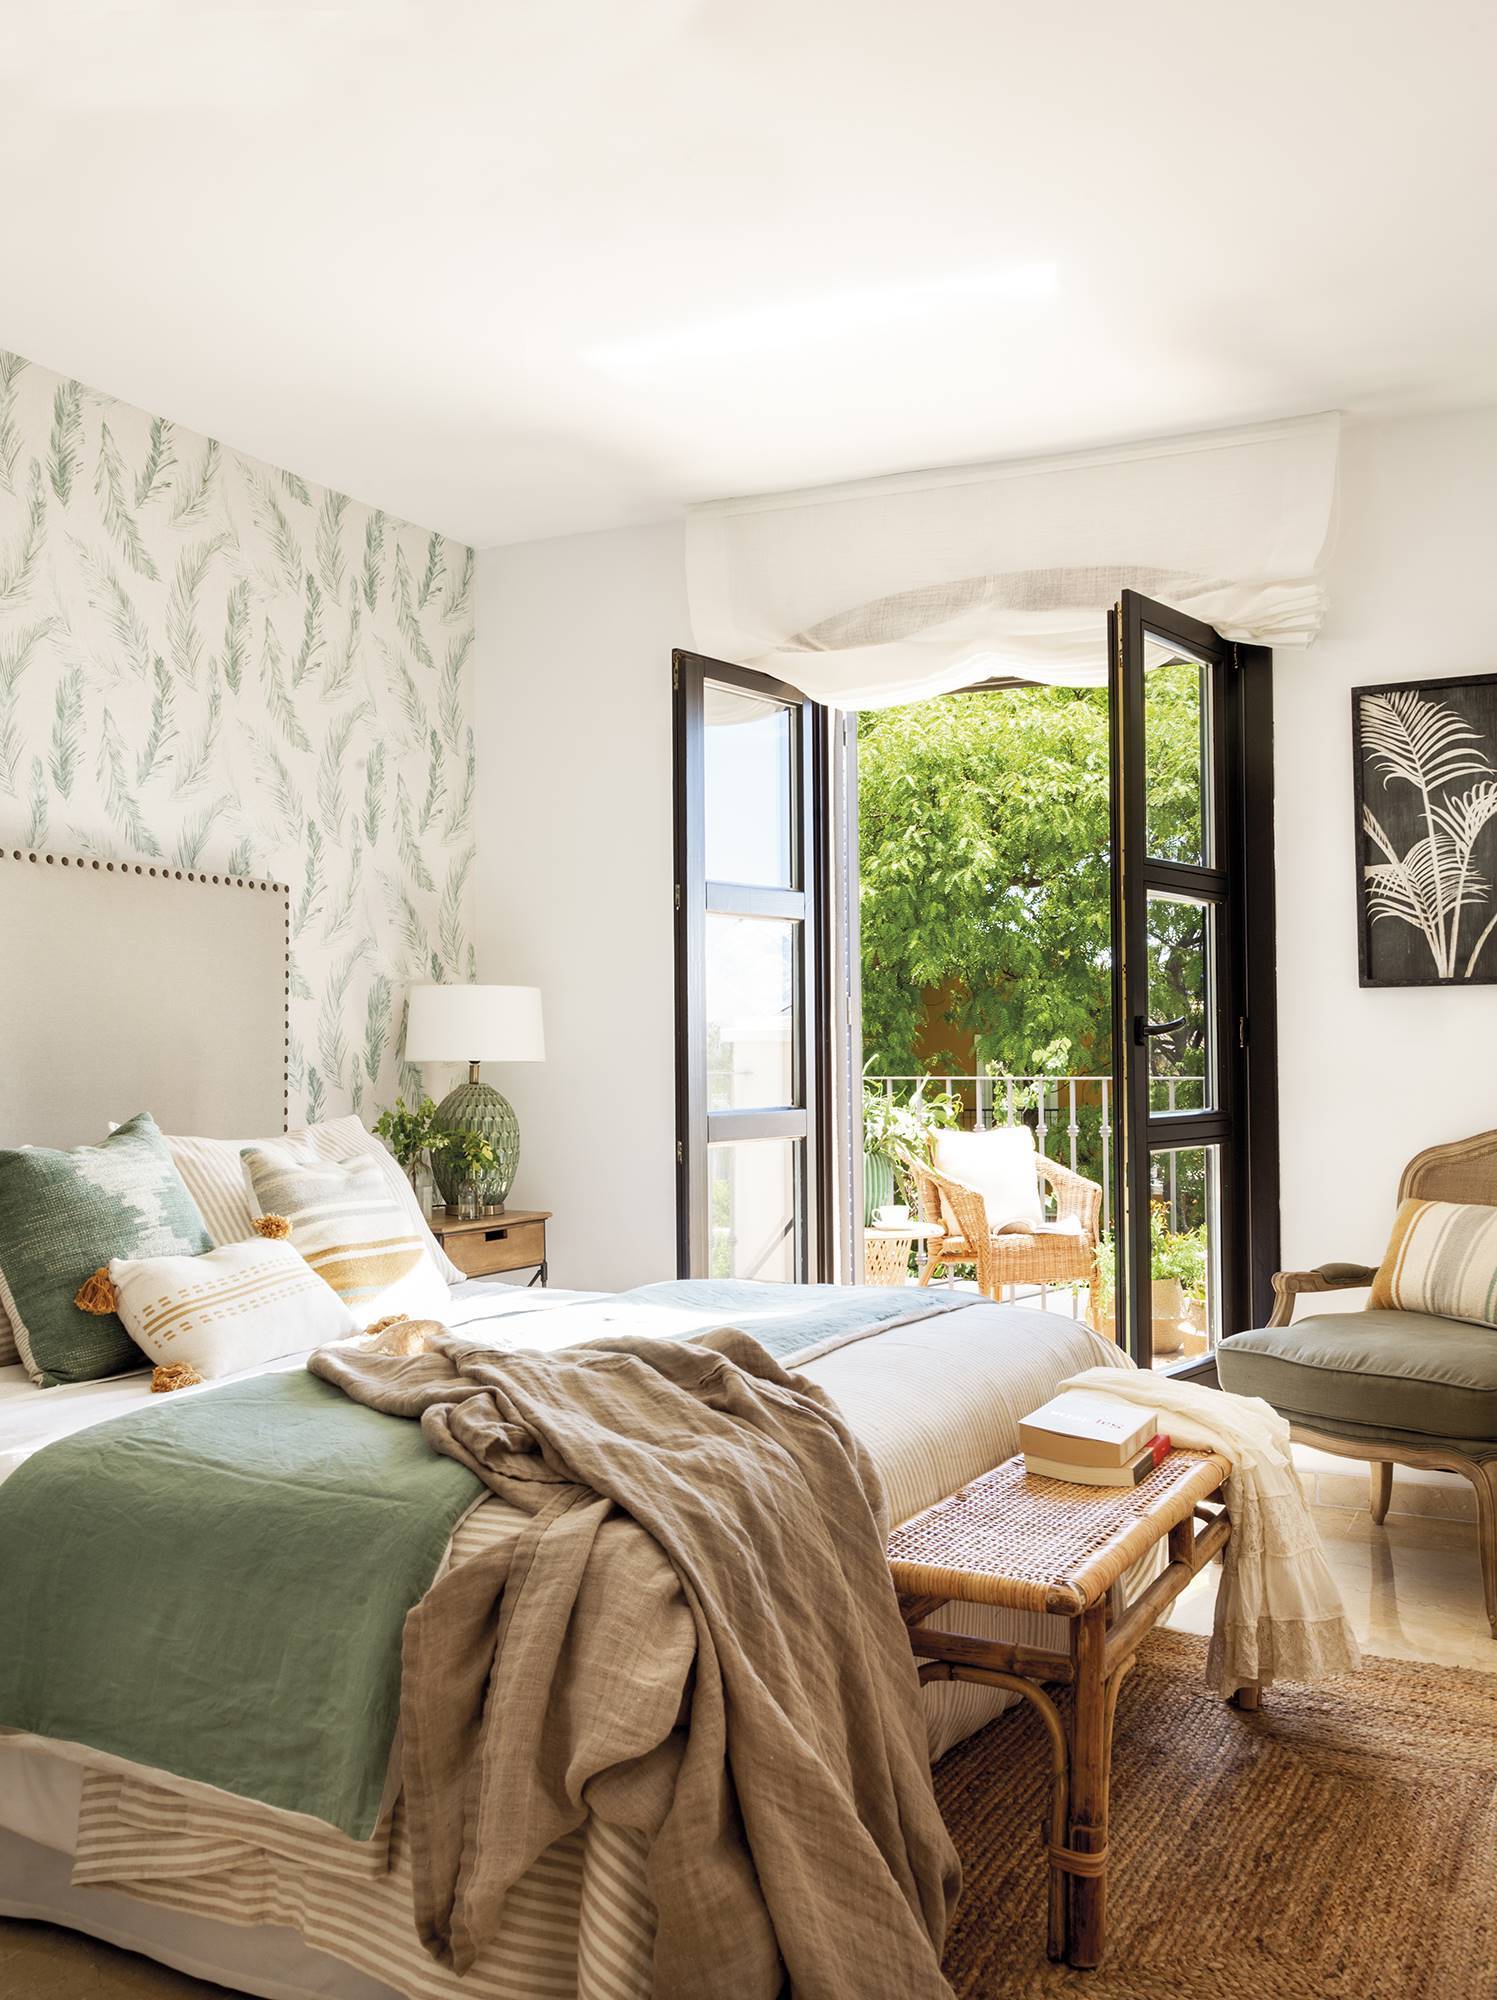 Dormitorio con papel pintado botánico en la pared del cabecero, textiles en tonos blancos y verdes y un banco de fibras a juego con la alfombra mg-5224-1 fca2d72d 1497x2000